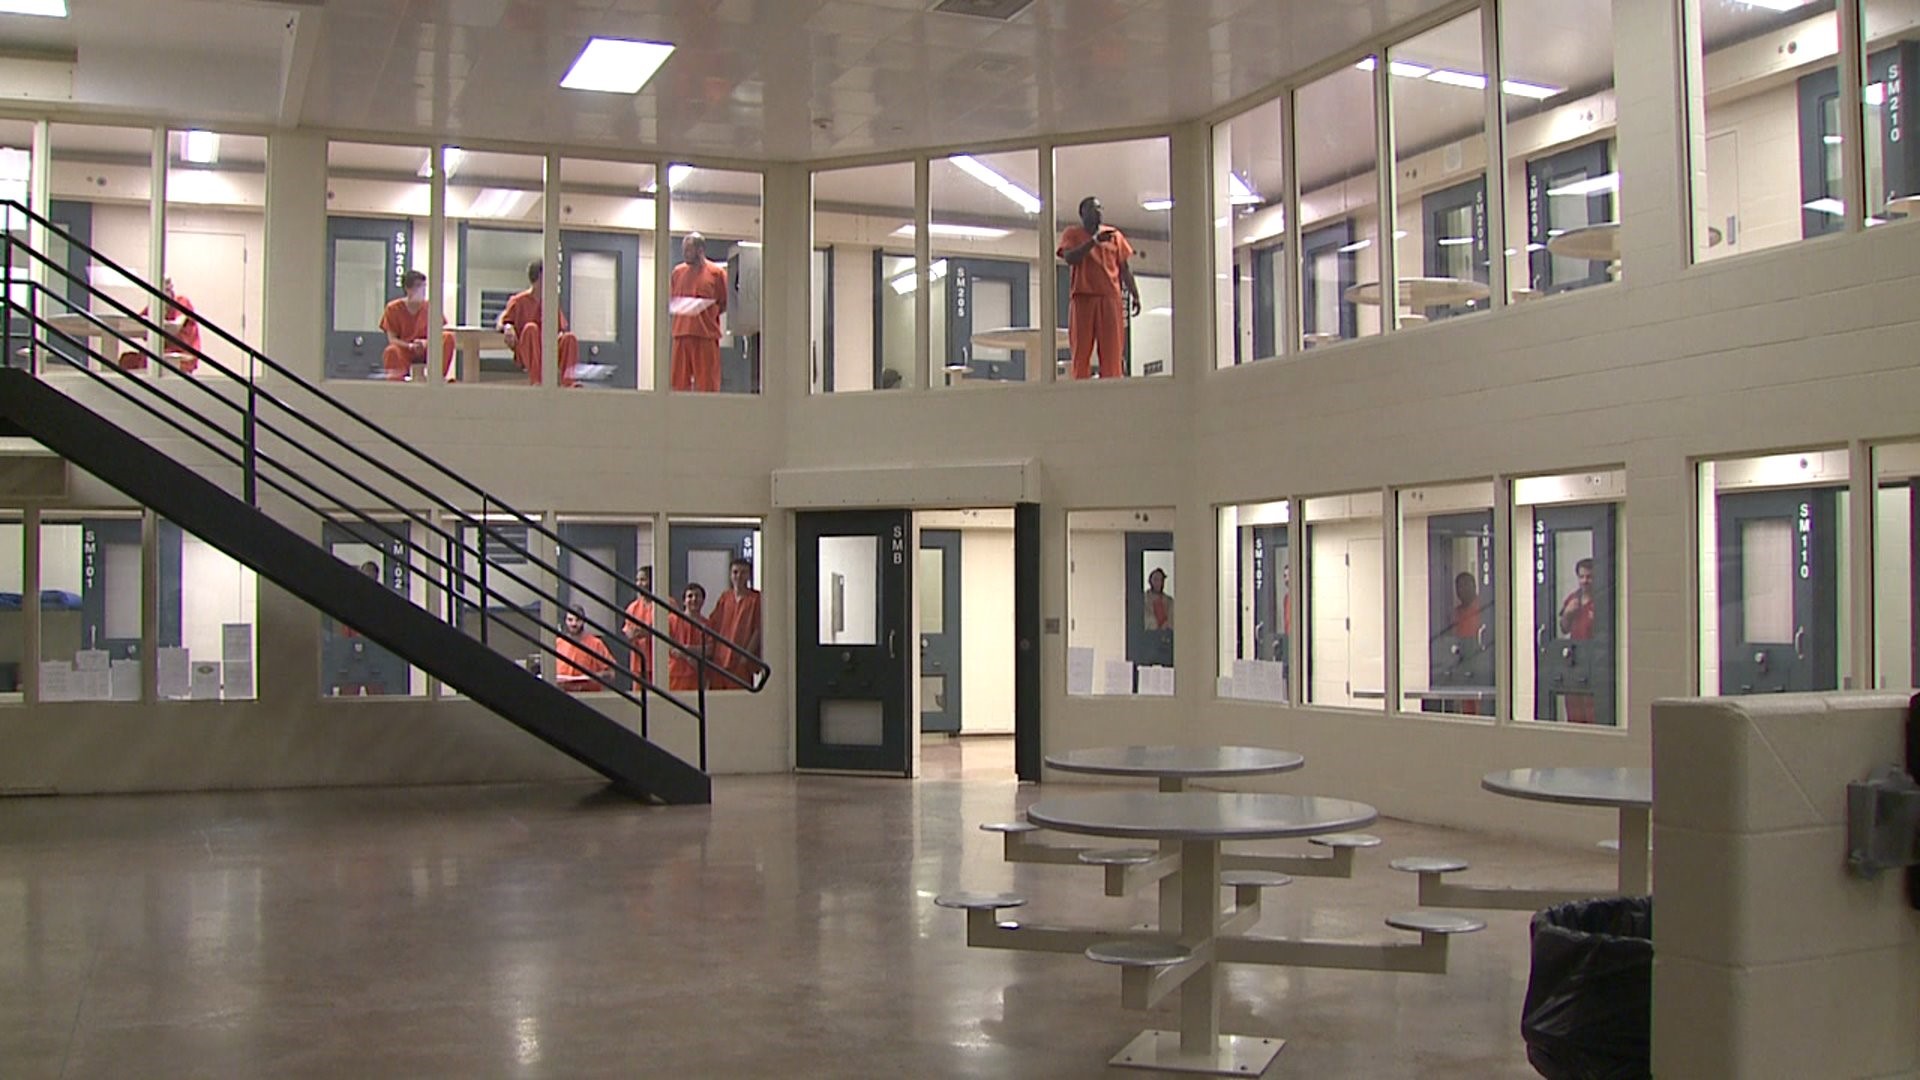 Juvenile Detention Center Full House At Juvenile Detention Center News News Gazette Com